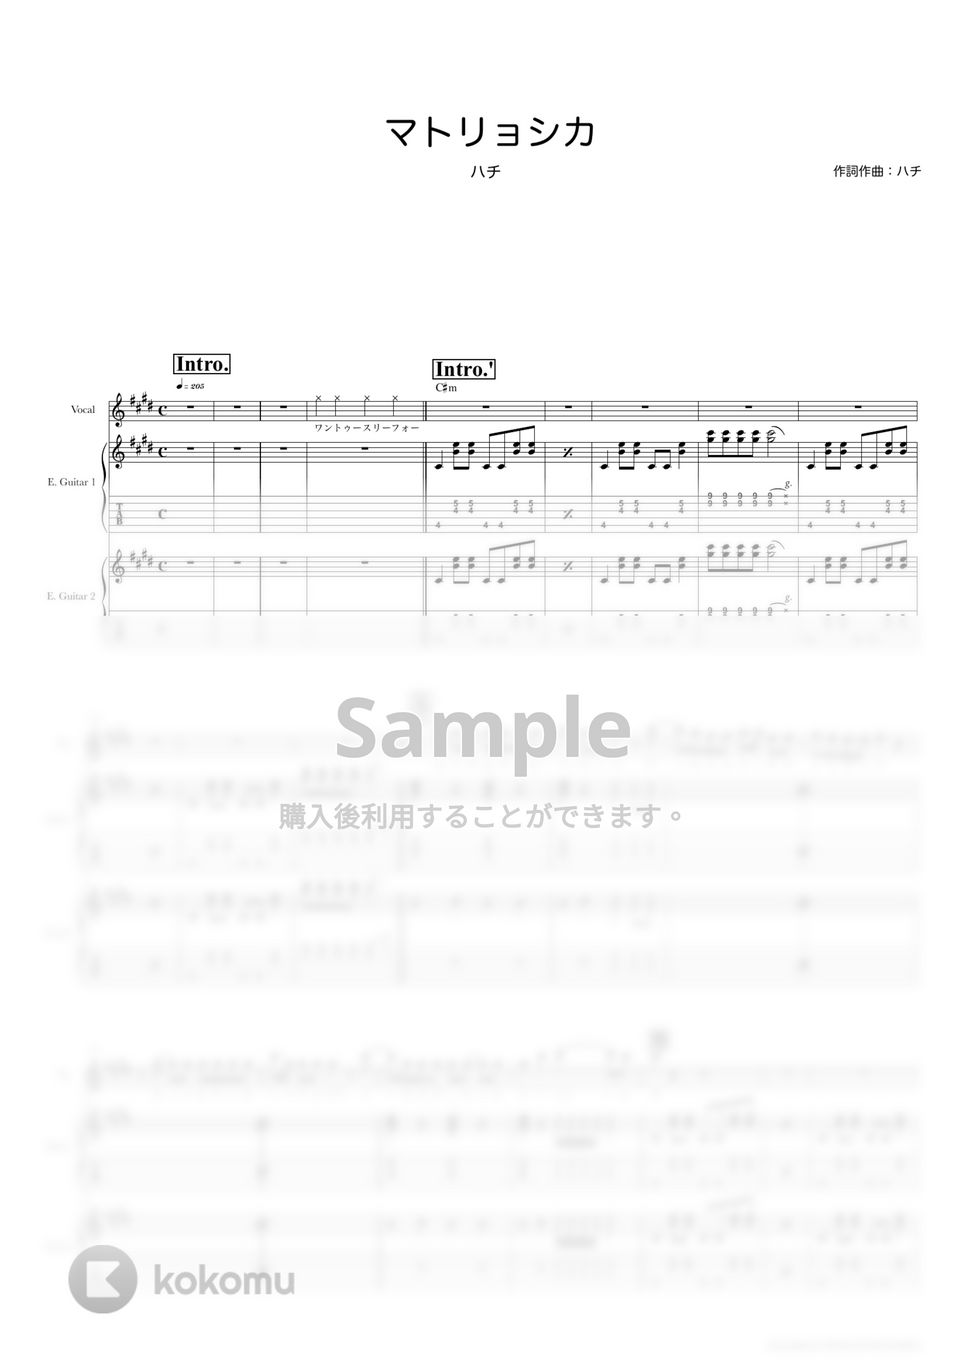 ハチ - マトリョシカ (ギタースコア・歌詞・コード付き) by TRIAD GUITAR SCHOOL